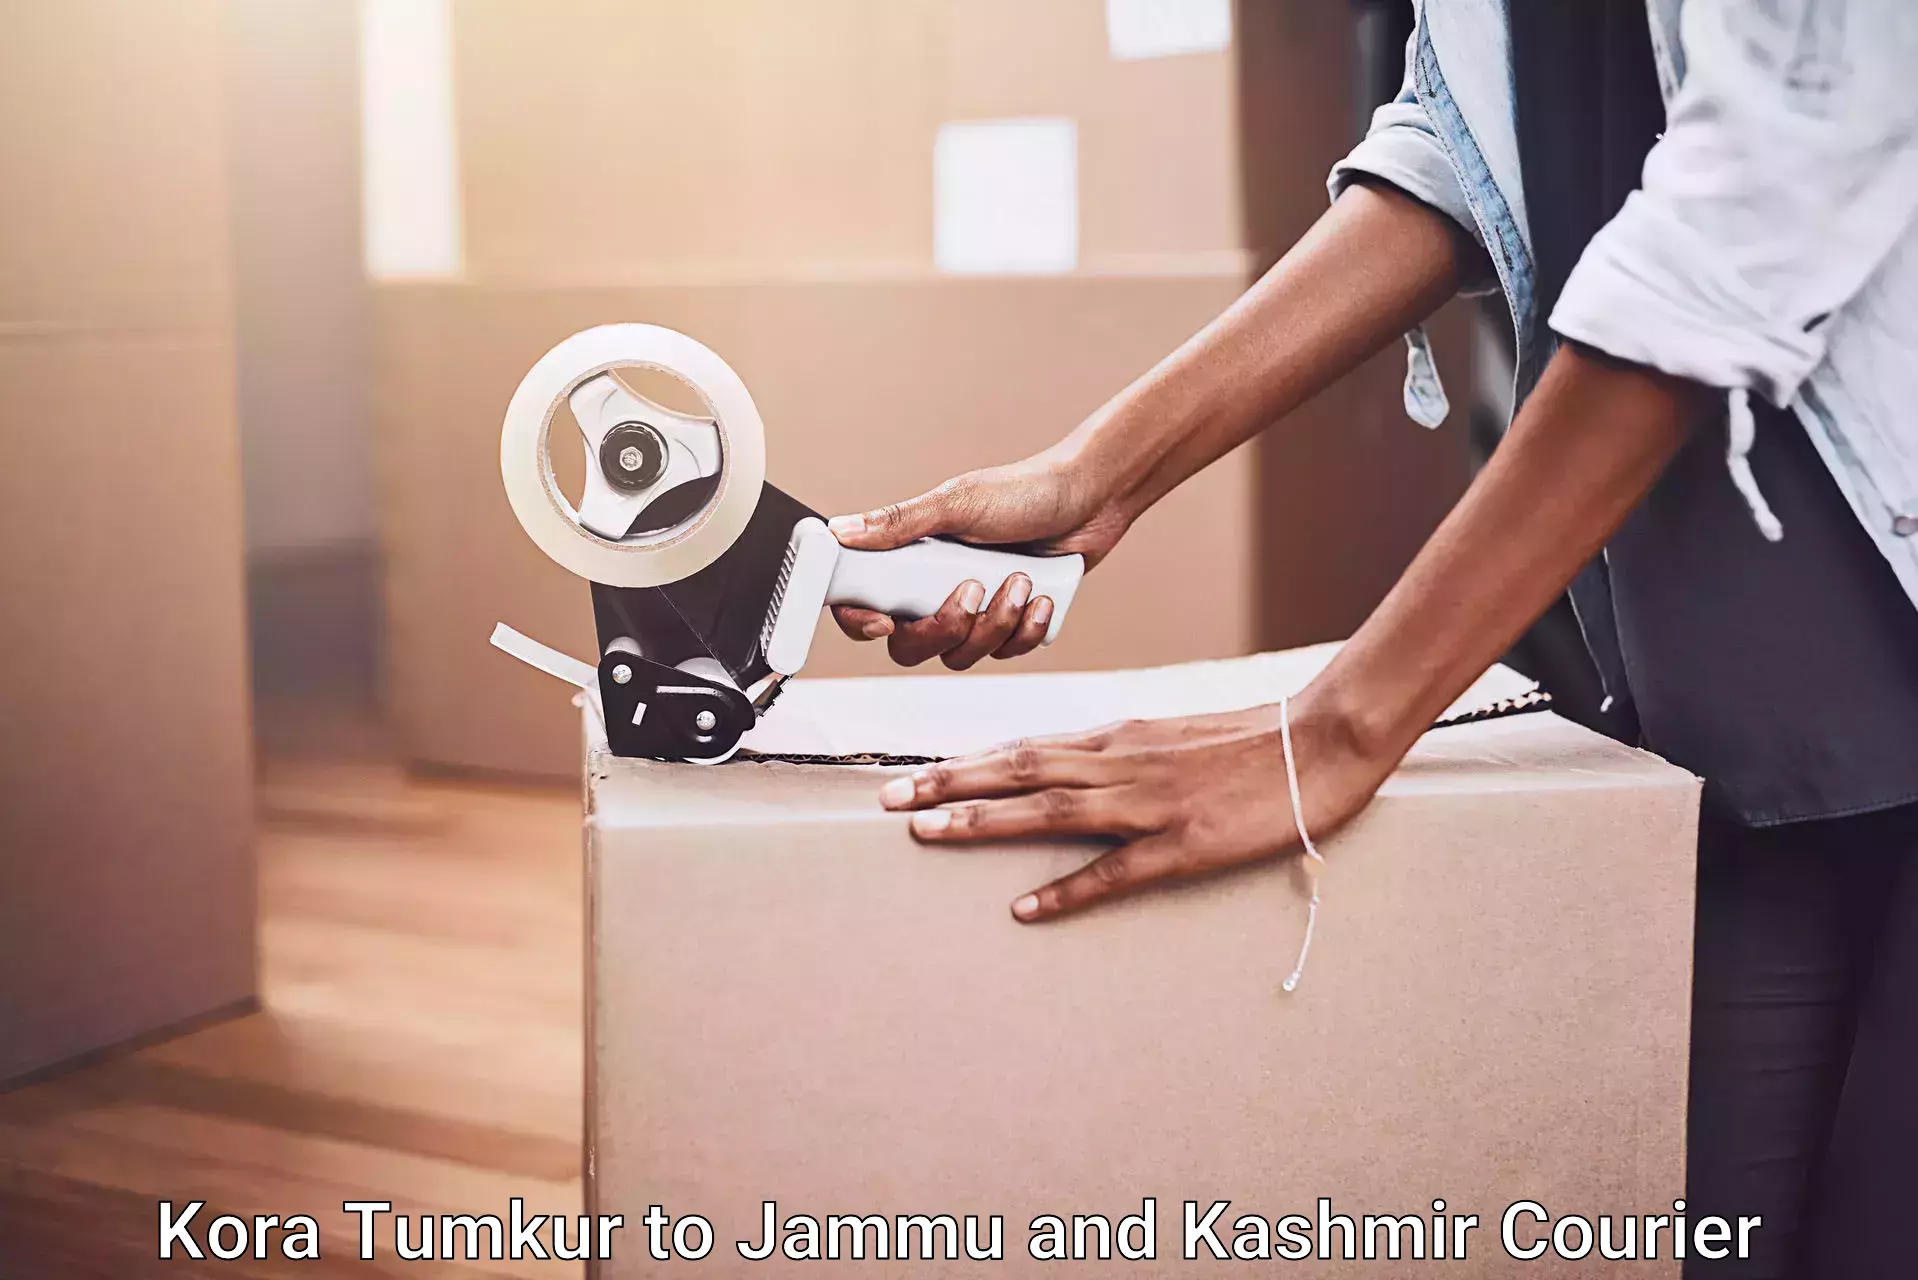 Customized relocation services Kora Tumkur to Jammu